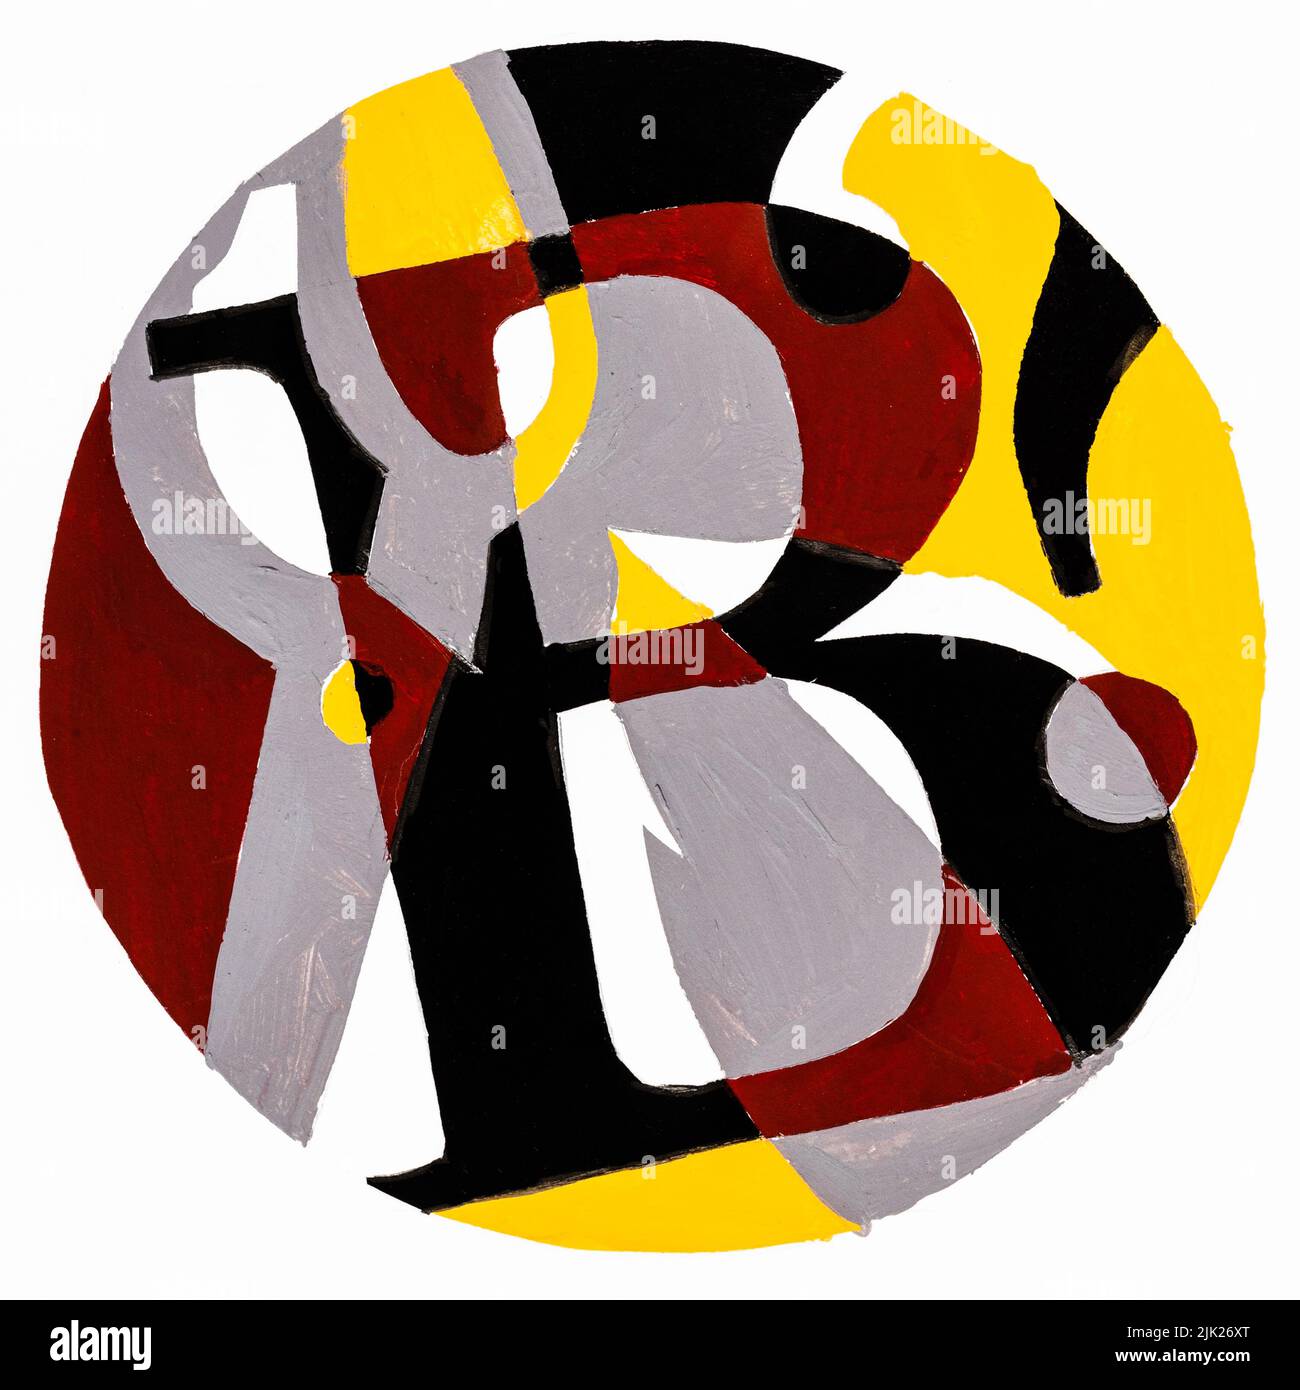 Composición redonda abstracta con letra B , tijeras y signo de interrogación pintado a mano con pinturas temple amarillas, marrones y negras sobre papel blanco Foto de stock